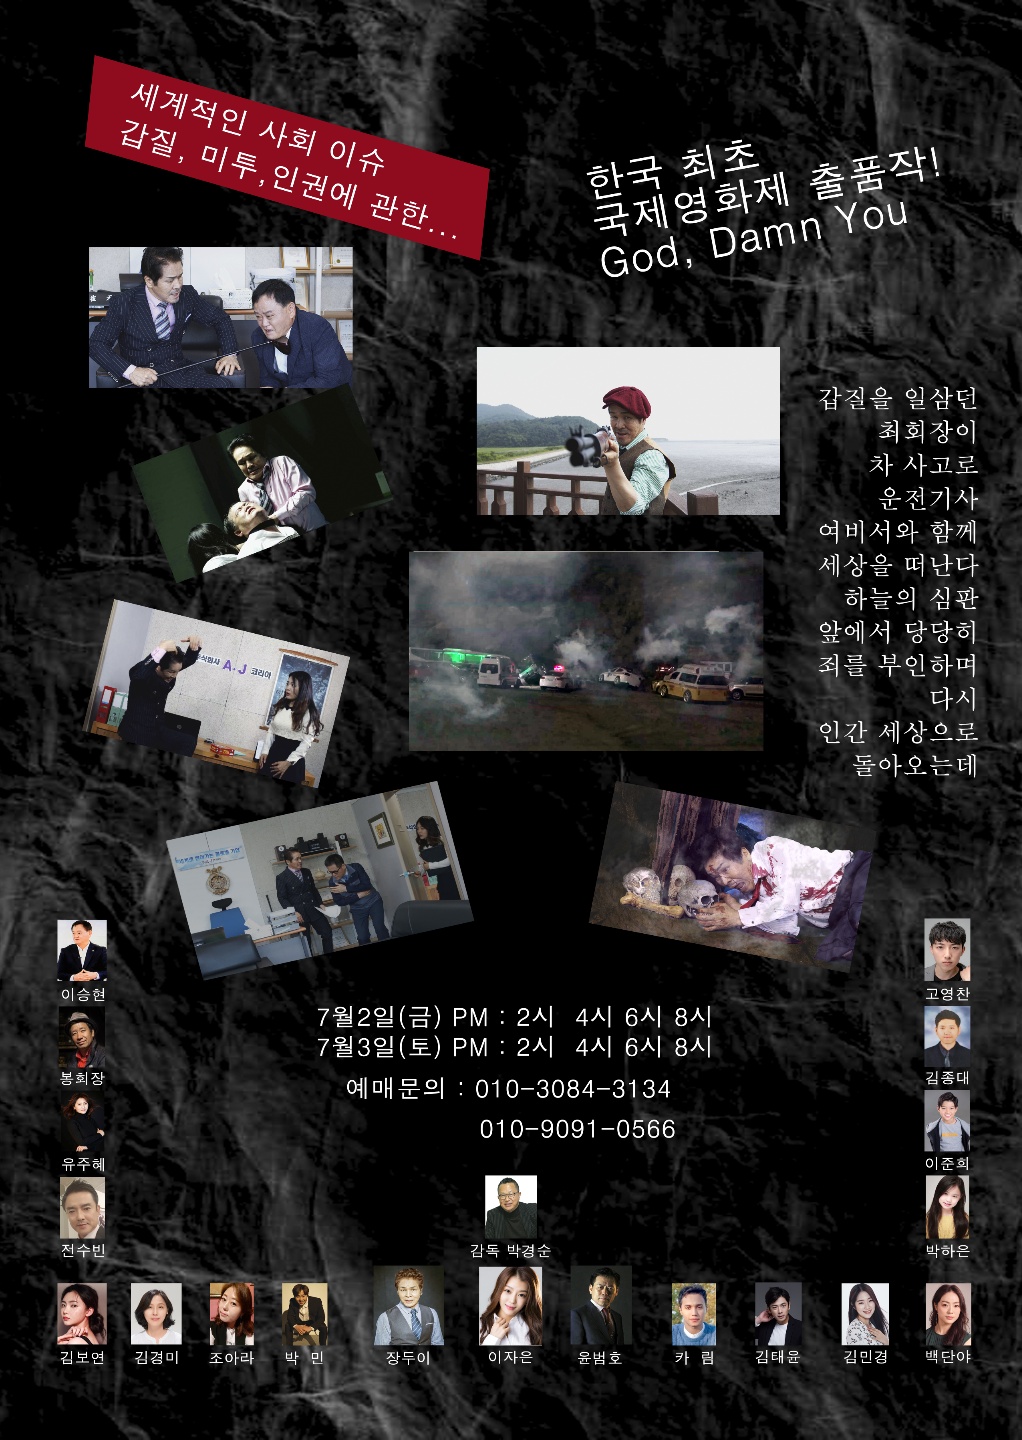 한국최초 국제영화제 출품작 "God Damn You", 대한극장 전격 개봉